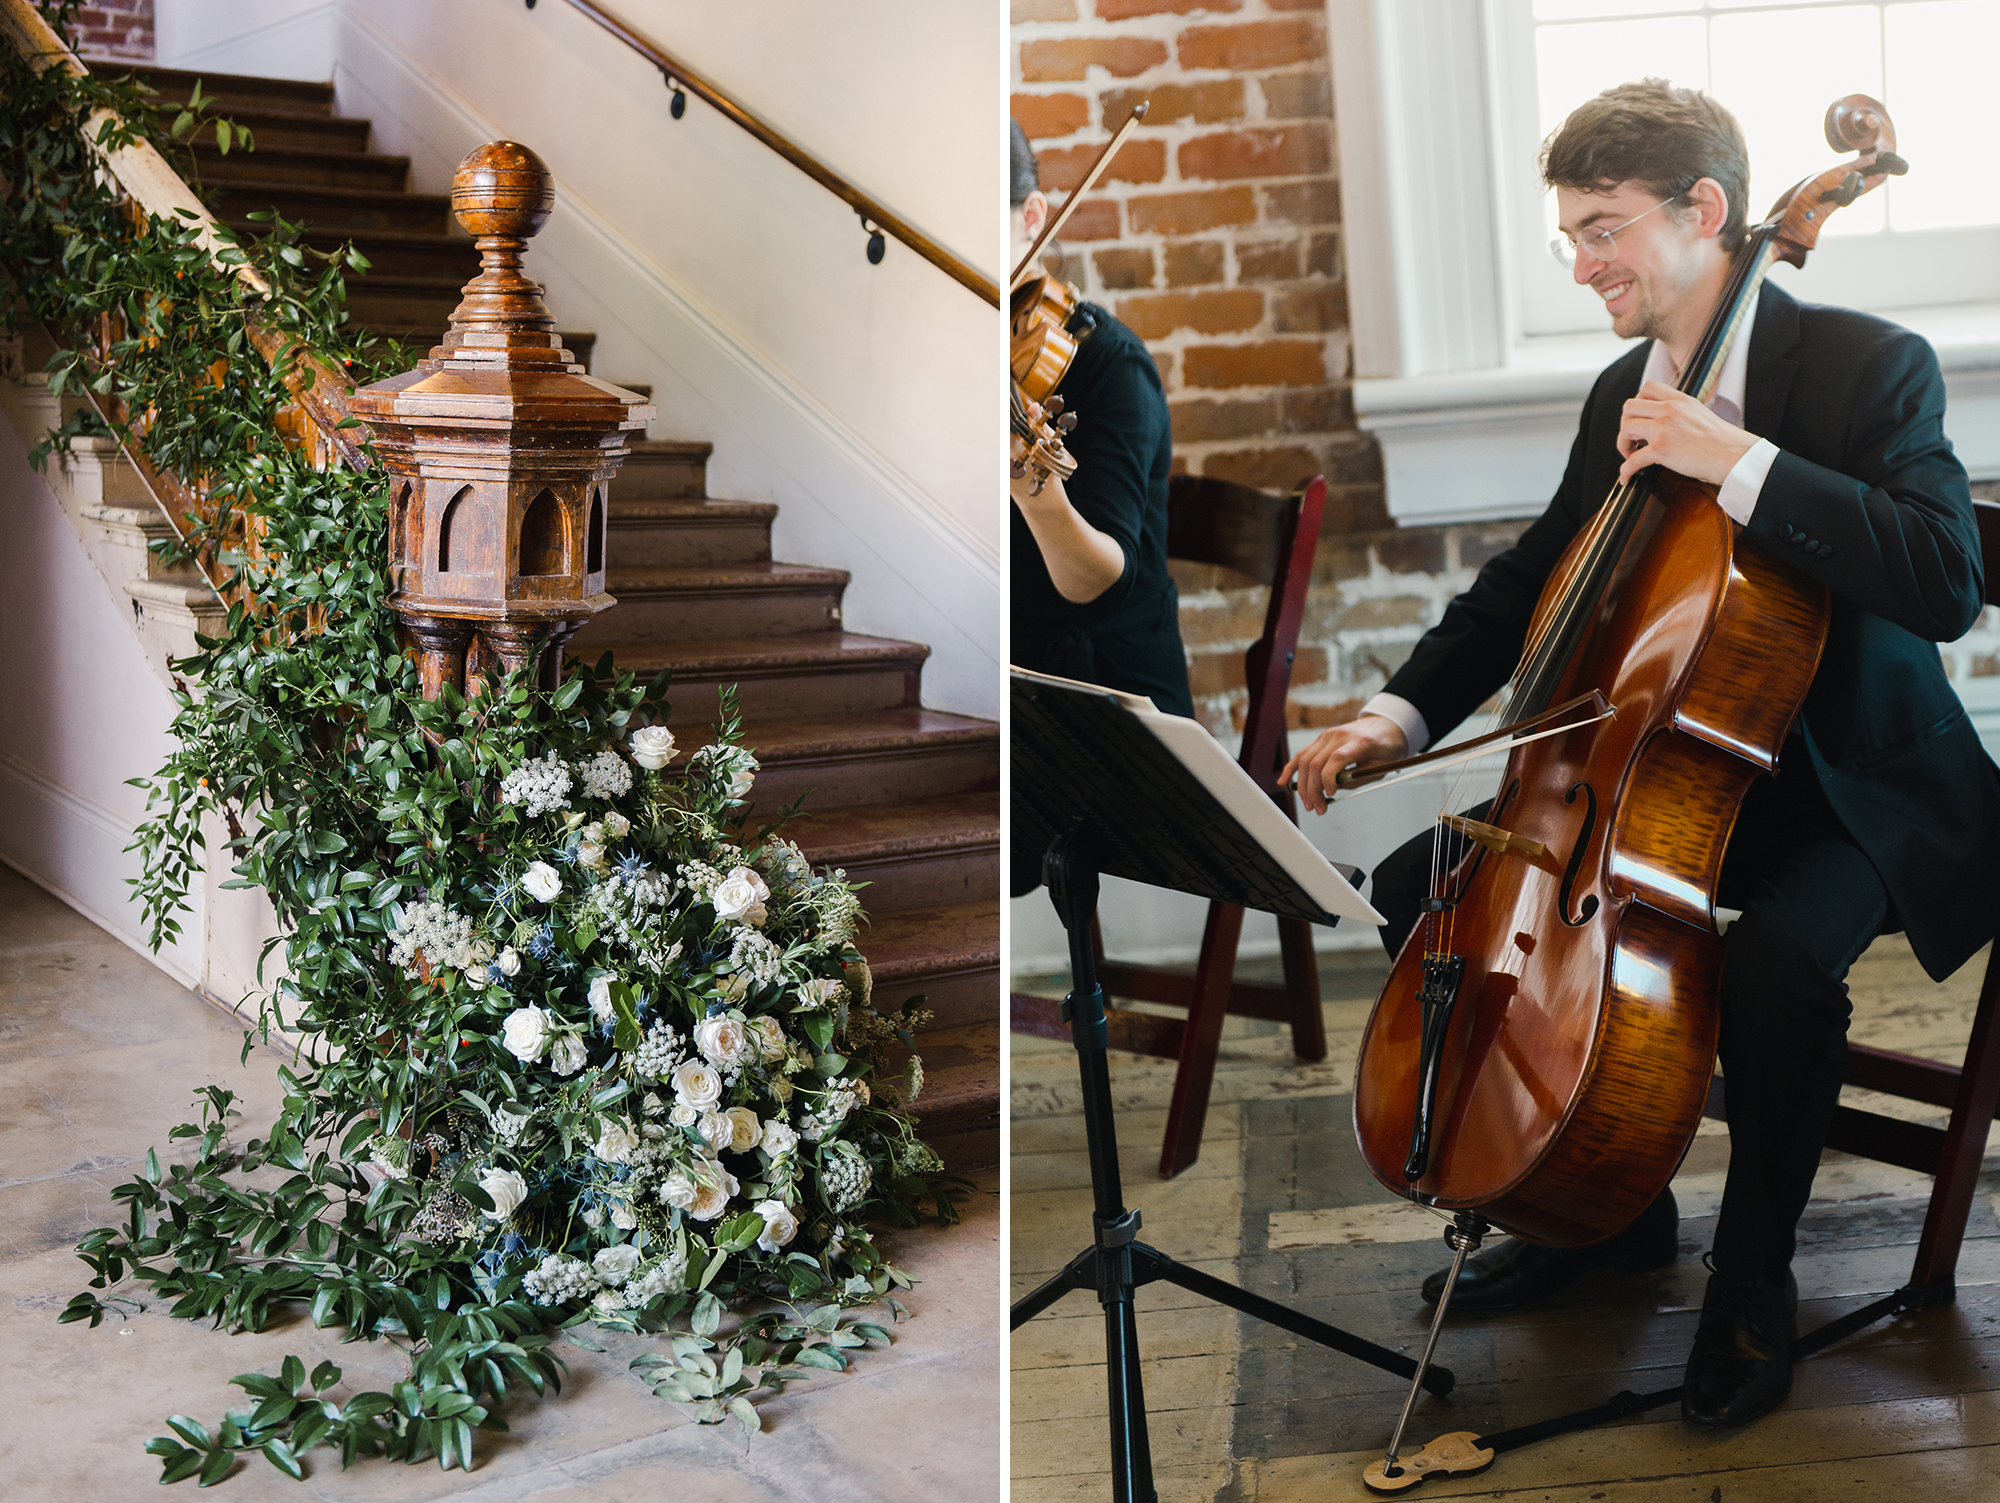 Church florals; church musicians